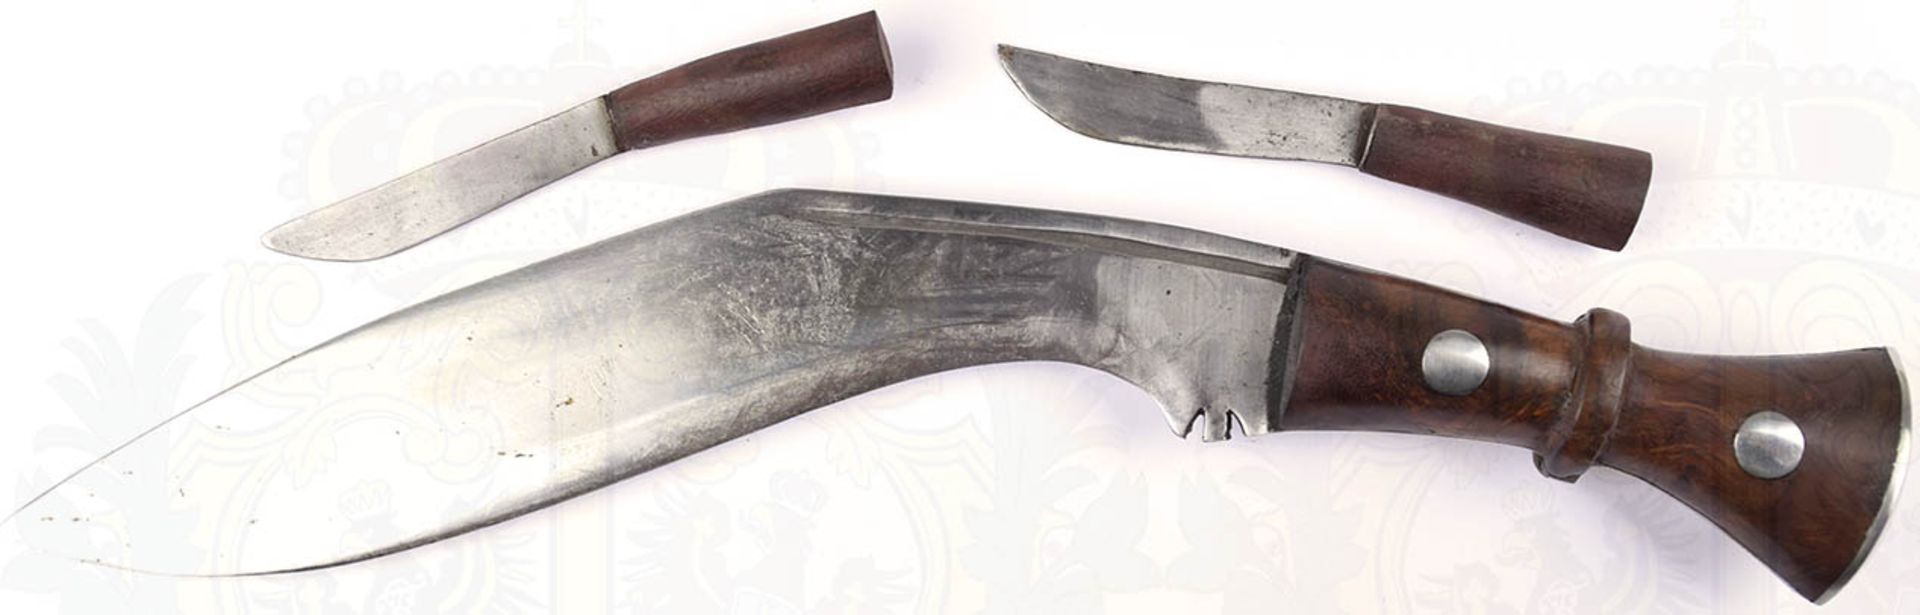 KUKRI, stark gekrümmte Klinge, L. 29 cm, dkl. brauner Holzgriff, 2 Nieten, belederte Holzscheide, - Bild 2 aus 2